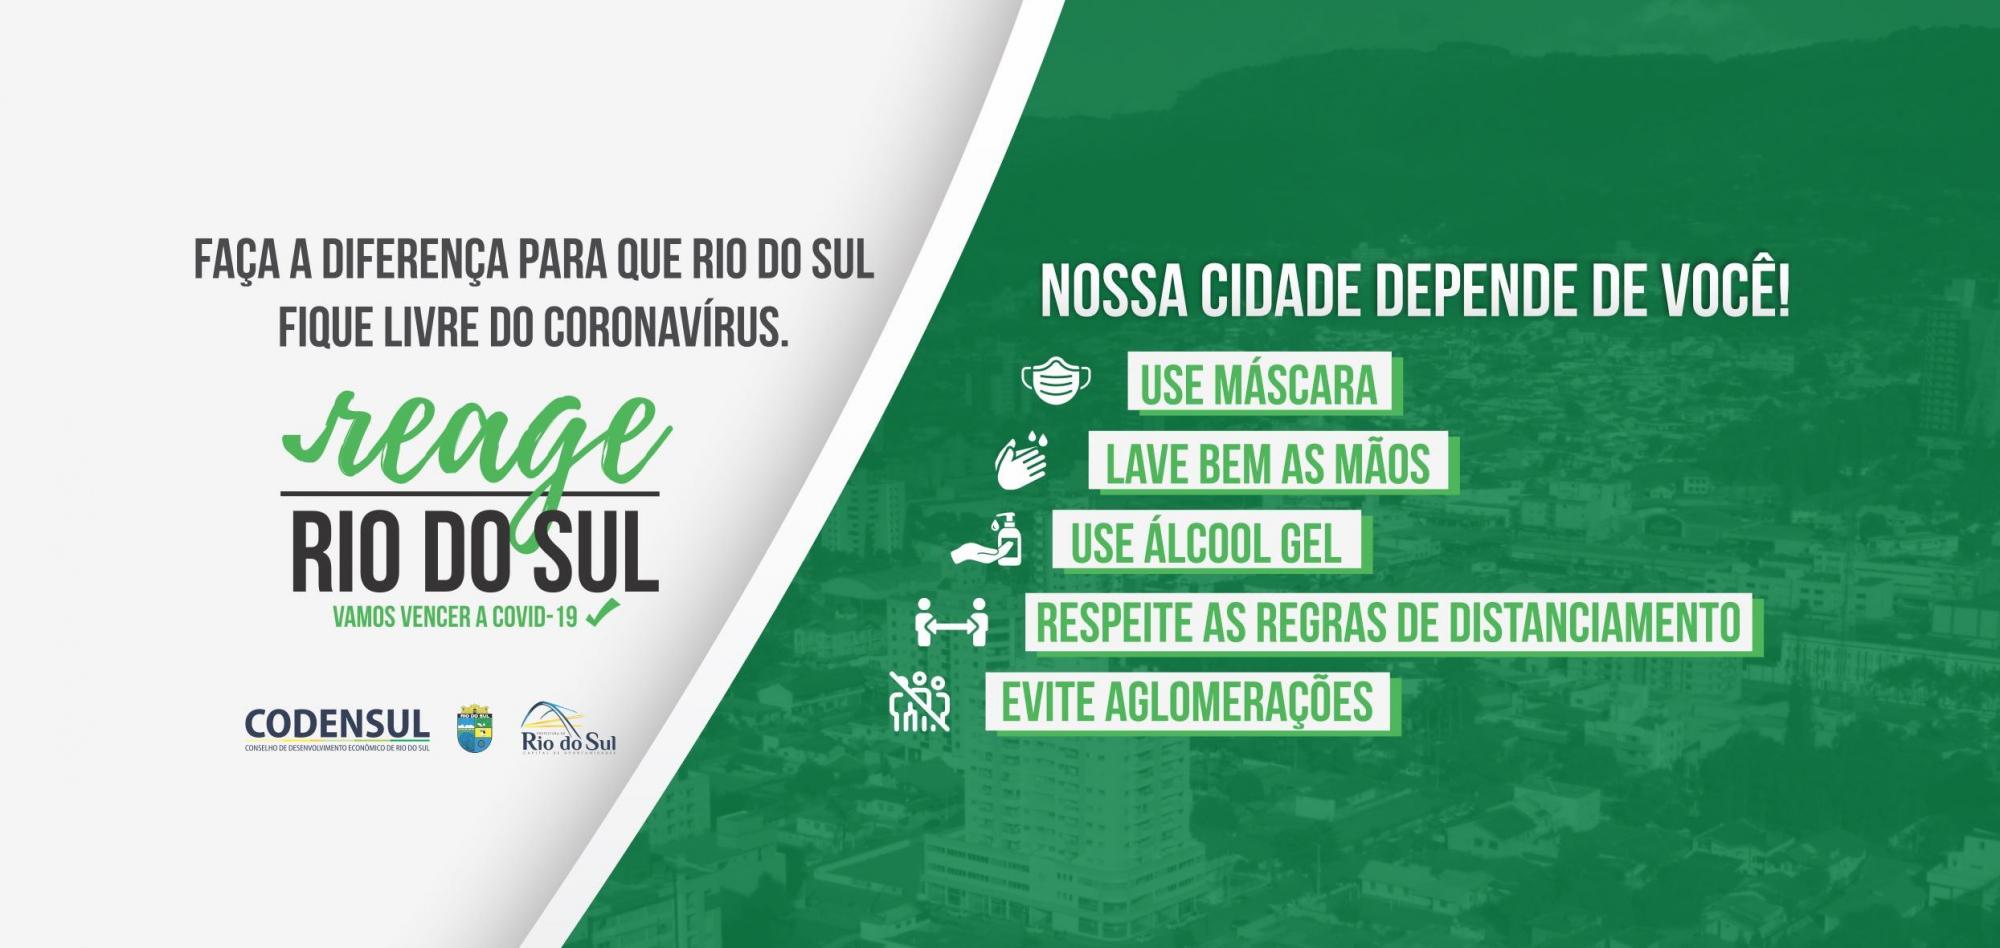 Administração endurece fiscalização na prevenção do novo coronavírus em Rio do Sul